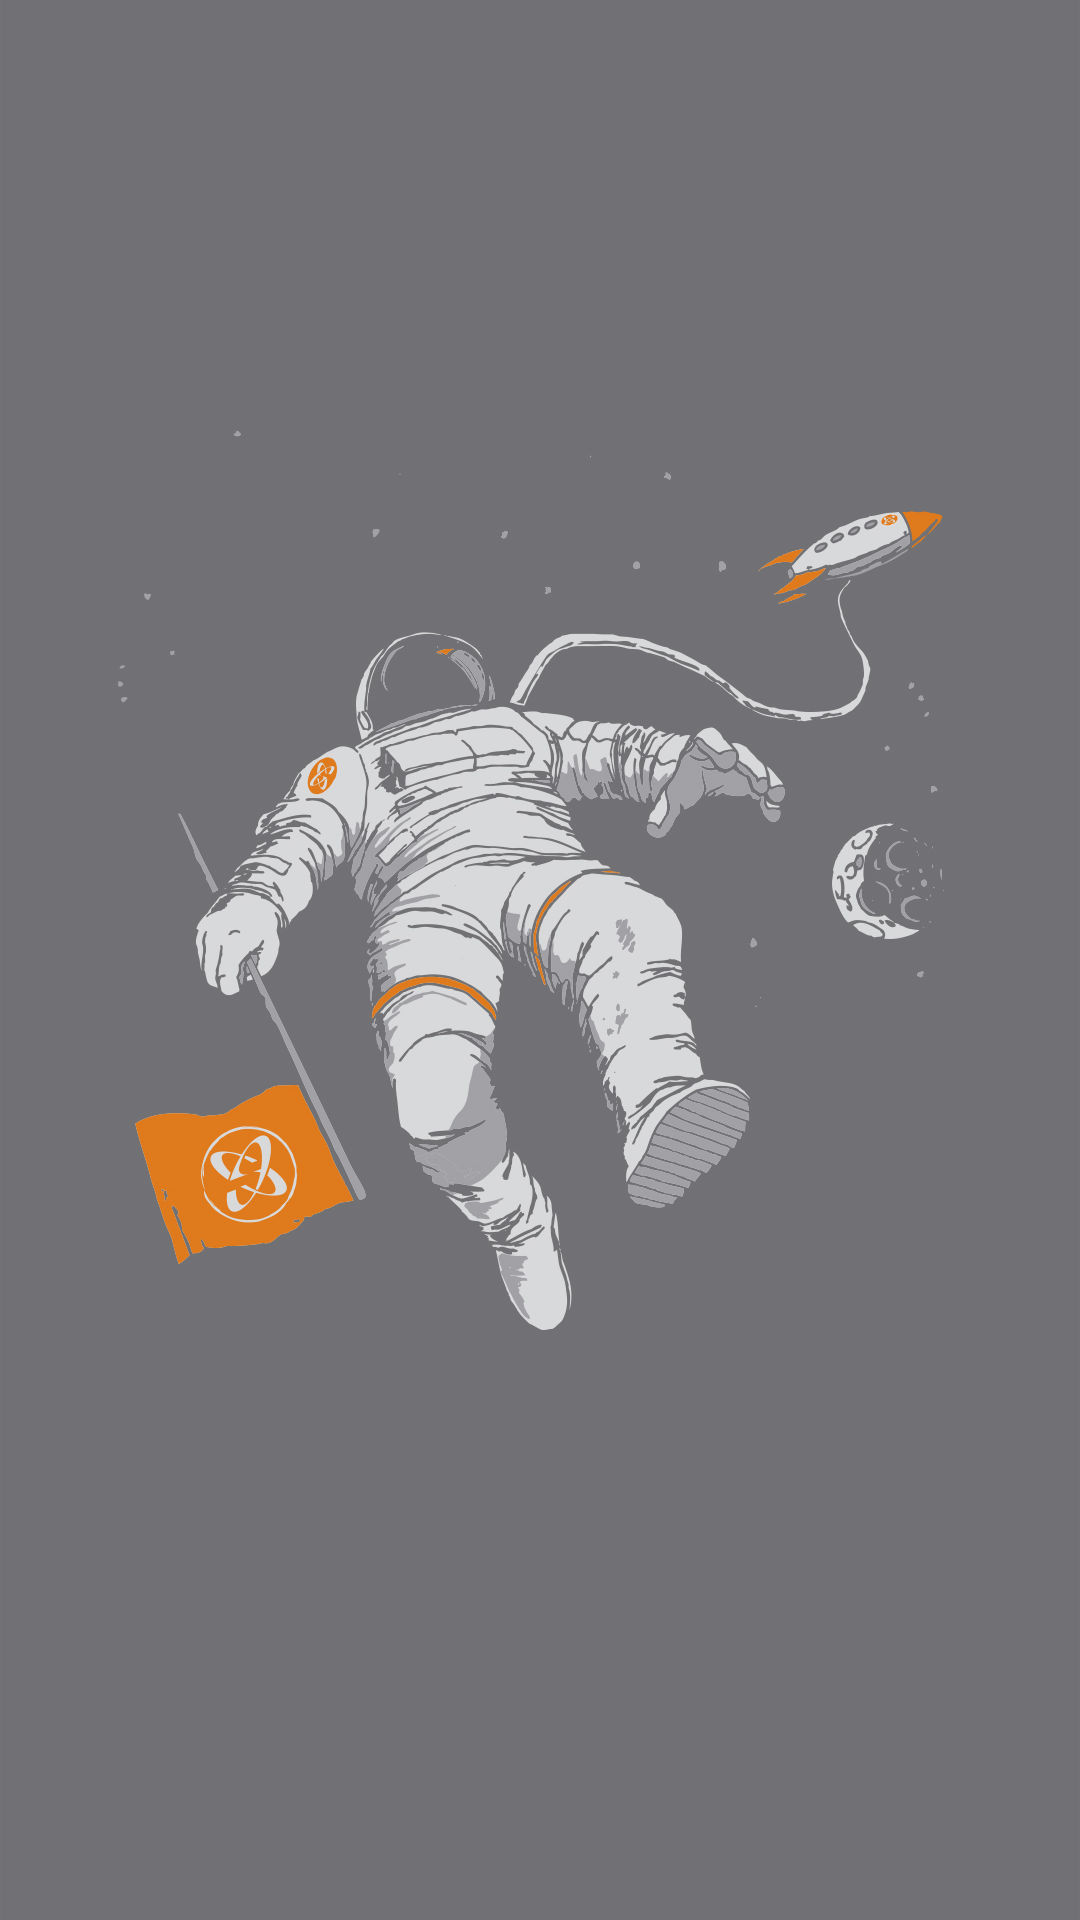 Download Free Astronaut Iphone Wallpaper | PixelsTalk.Net